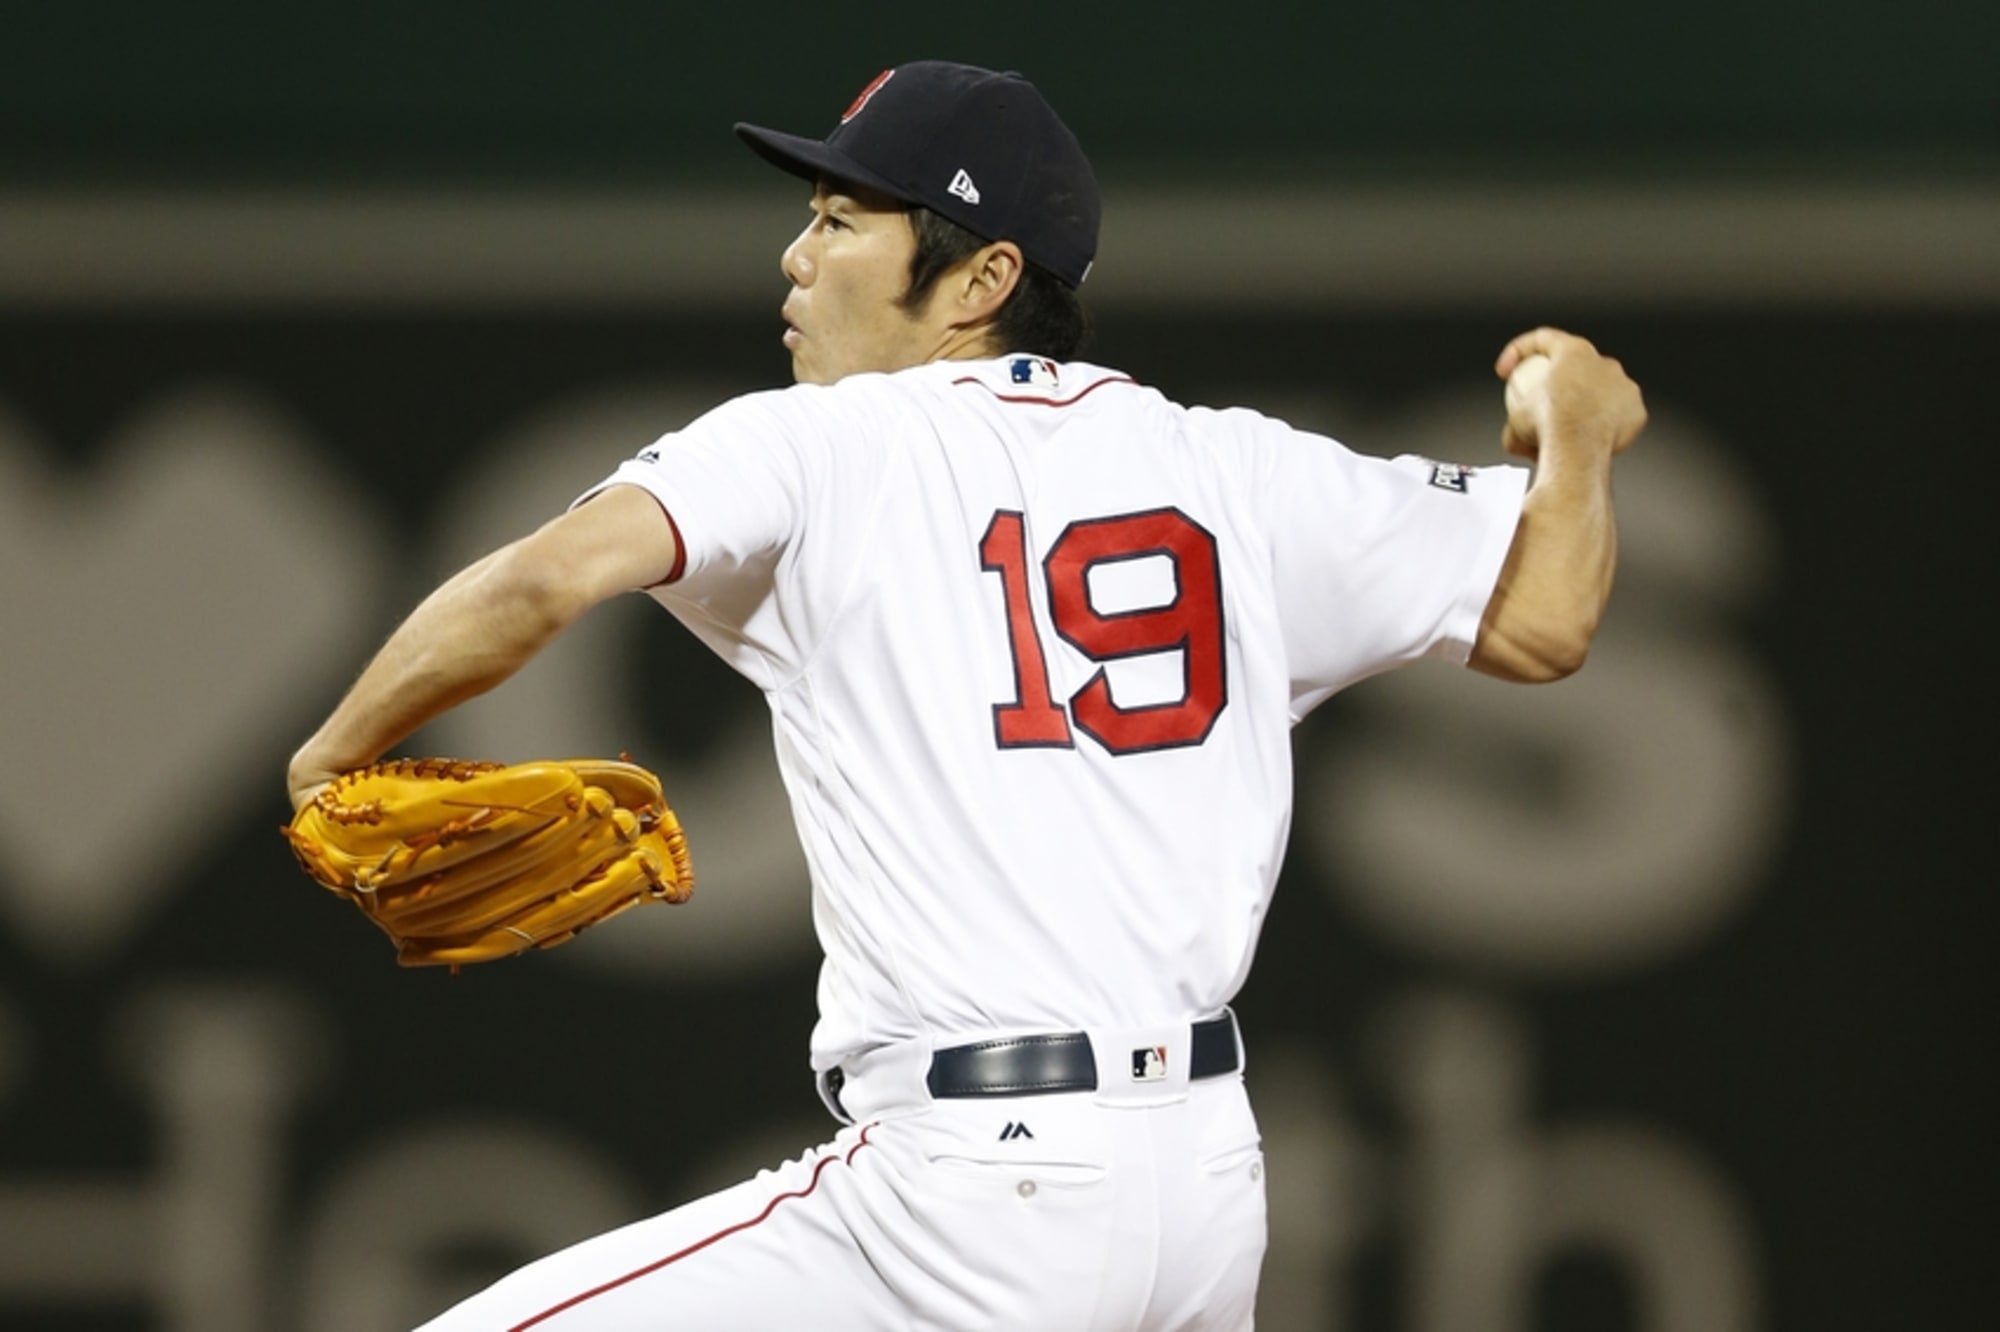 Red Sox closer Koji Uehara out for season